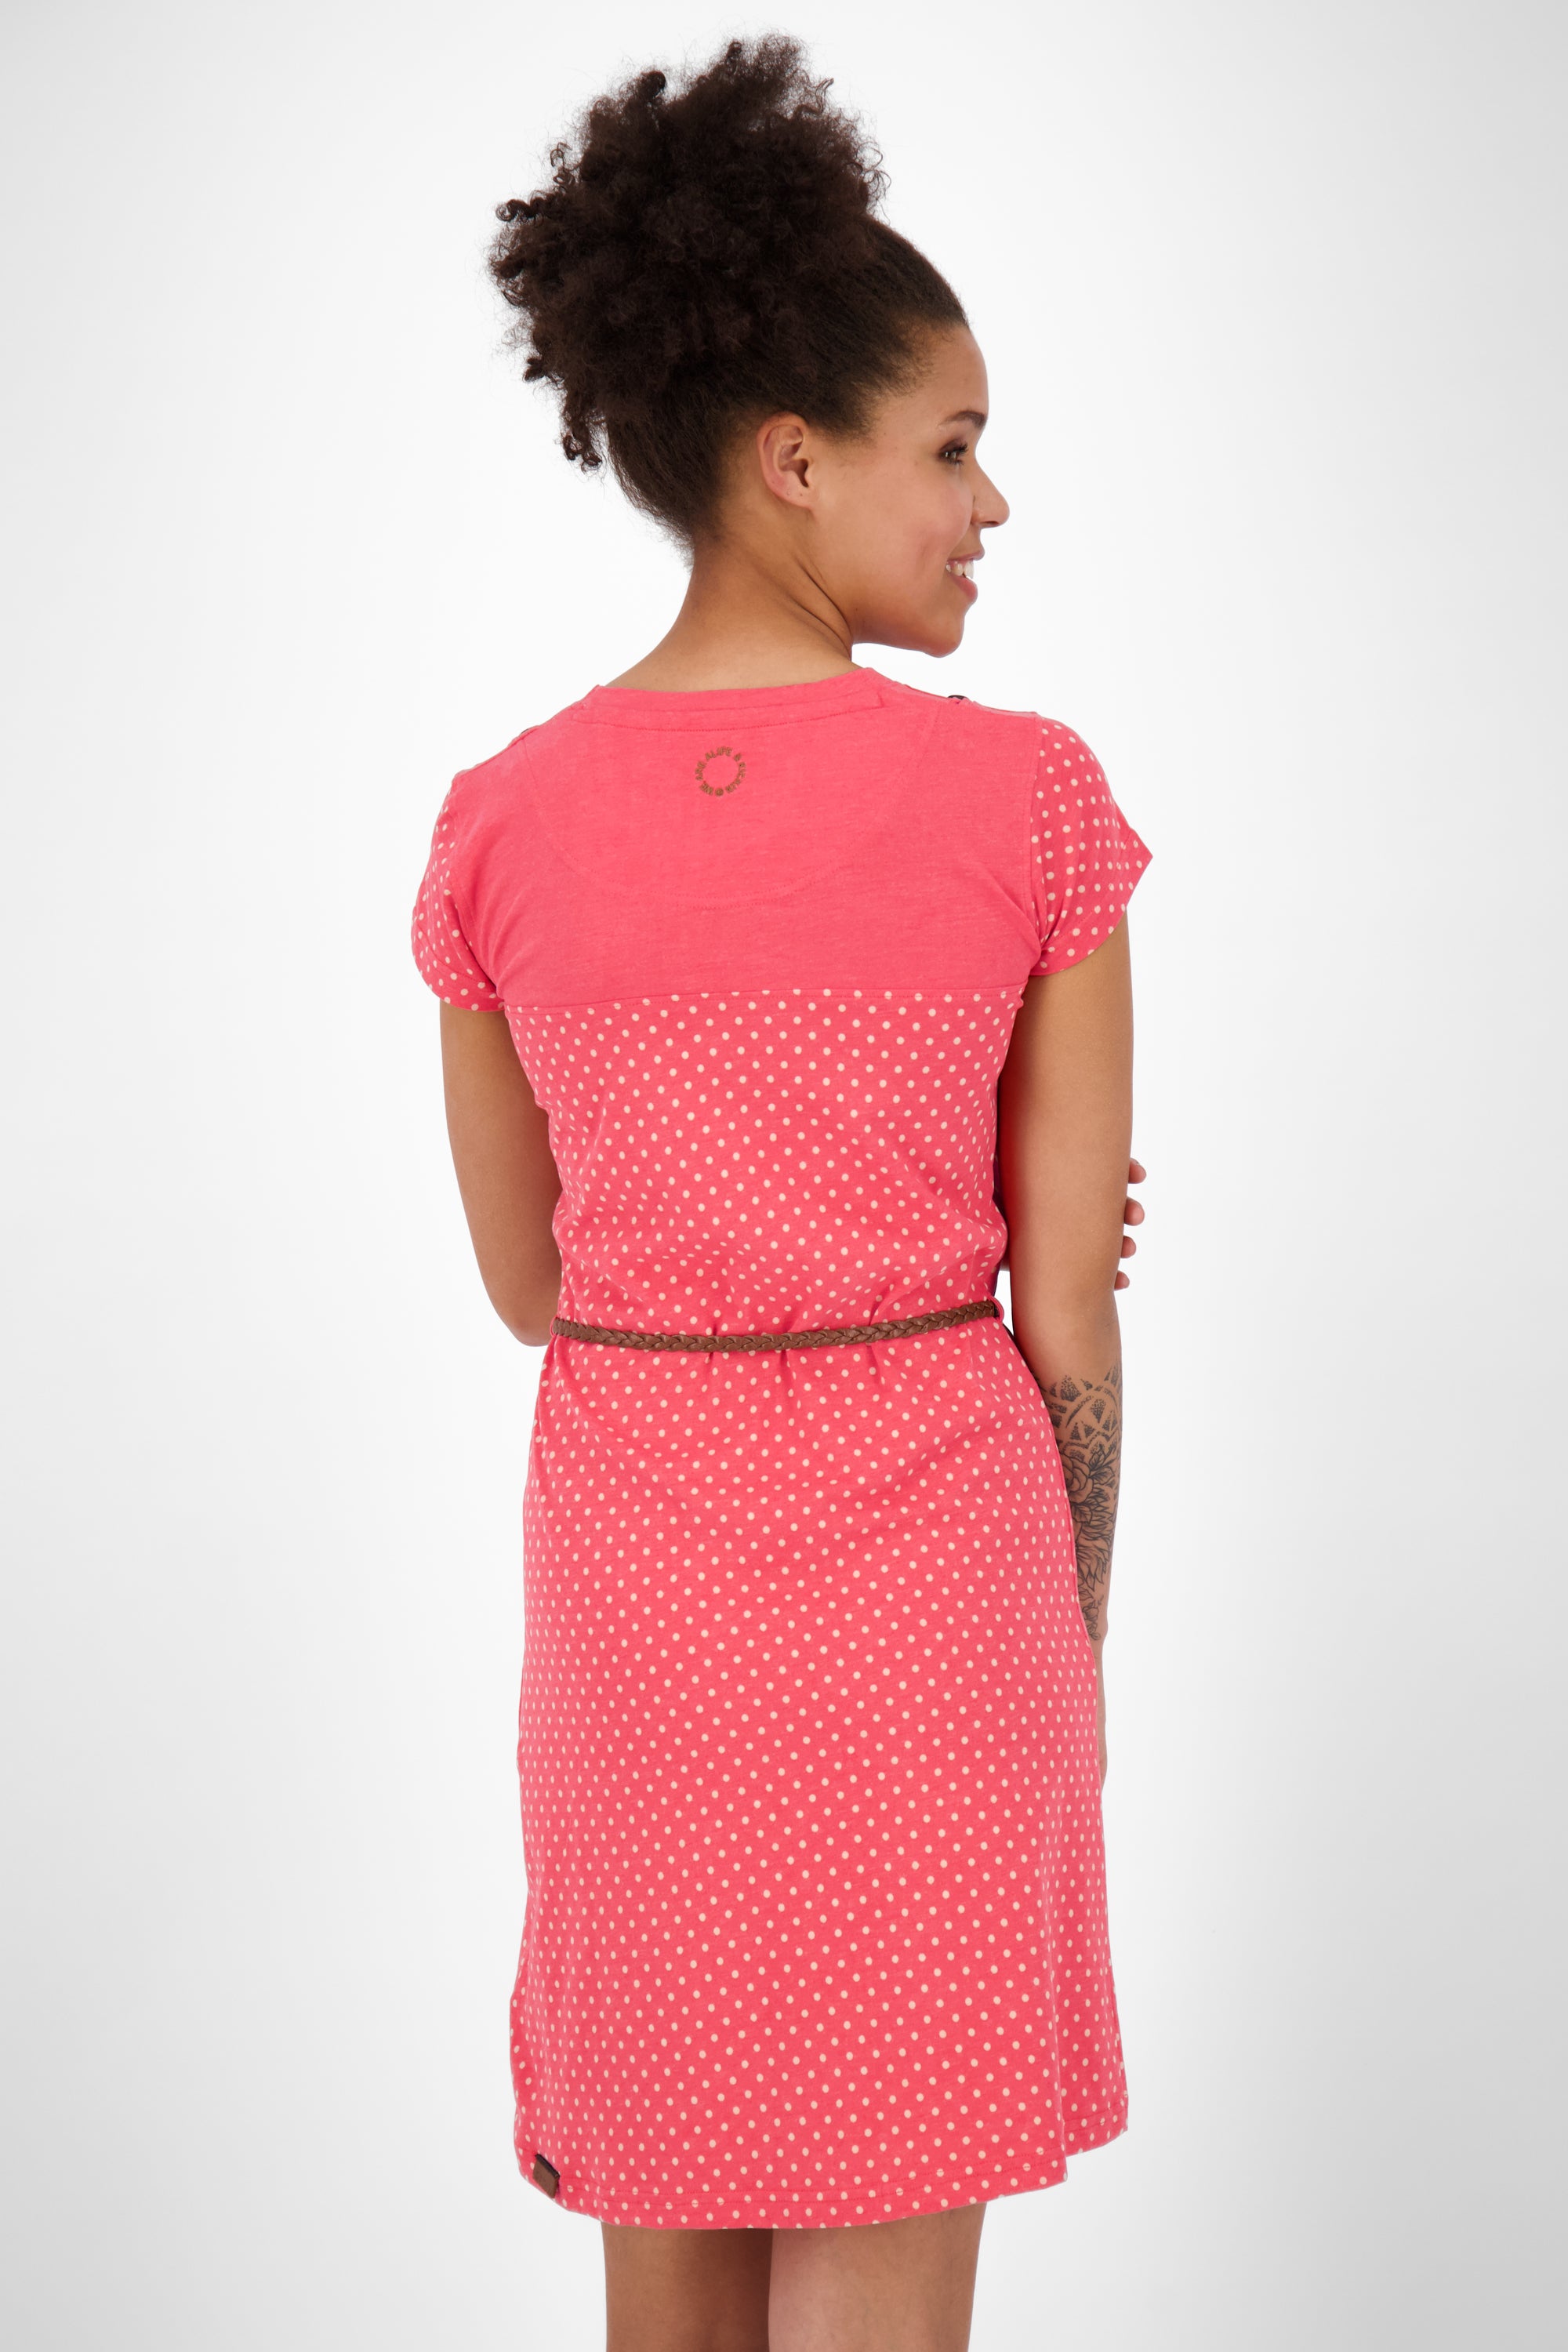 Damen Jerseykleid LeoniceAK B - Verspielter Pünktchen-Print für den Sommer Rot